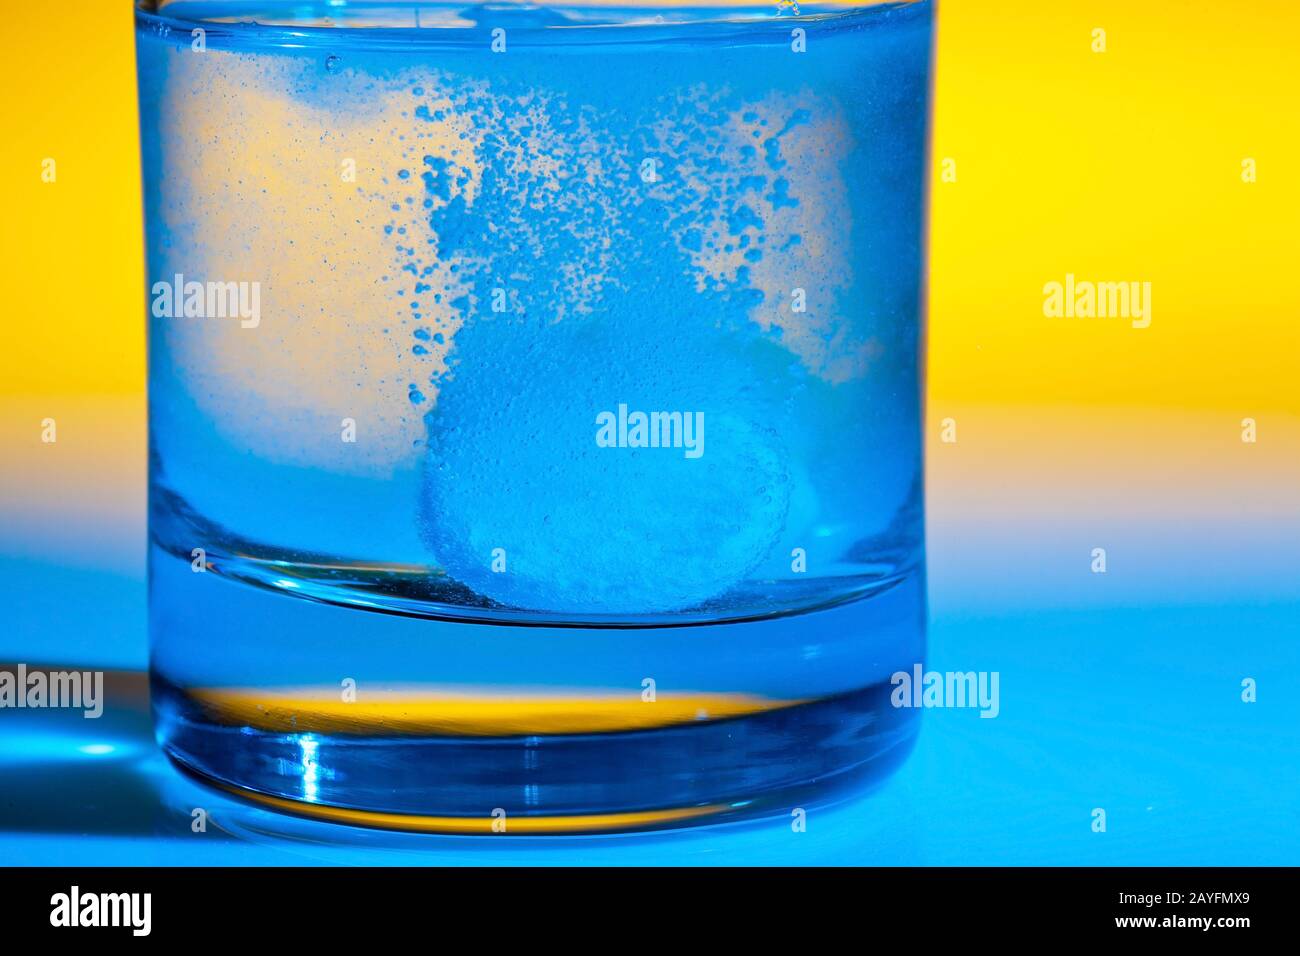 Eine Brausetablette loest sich in einem Glas Wasser auf, Aspirin, Foto Stock